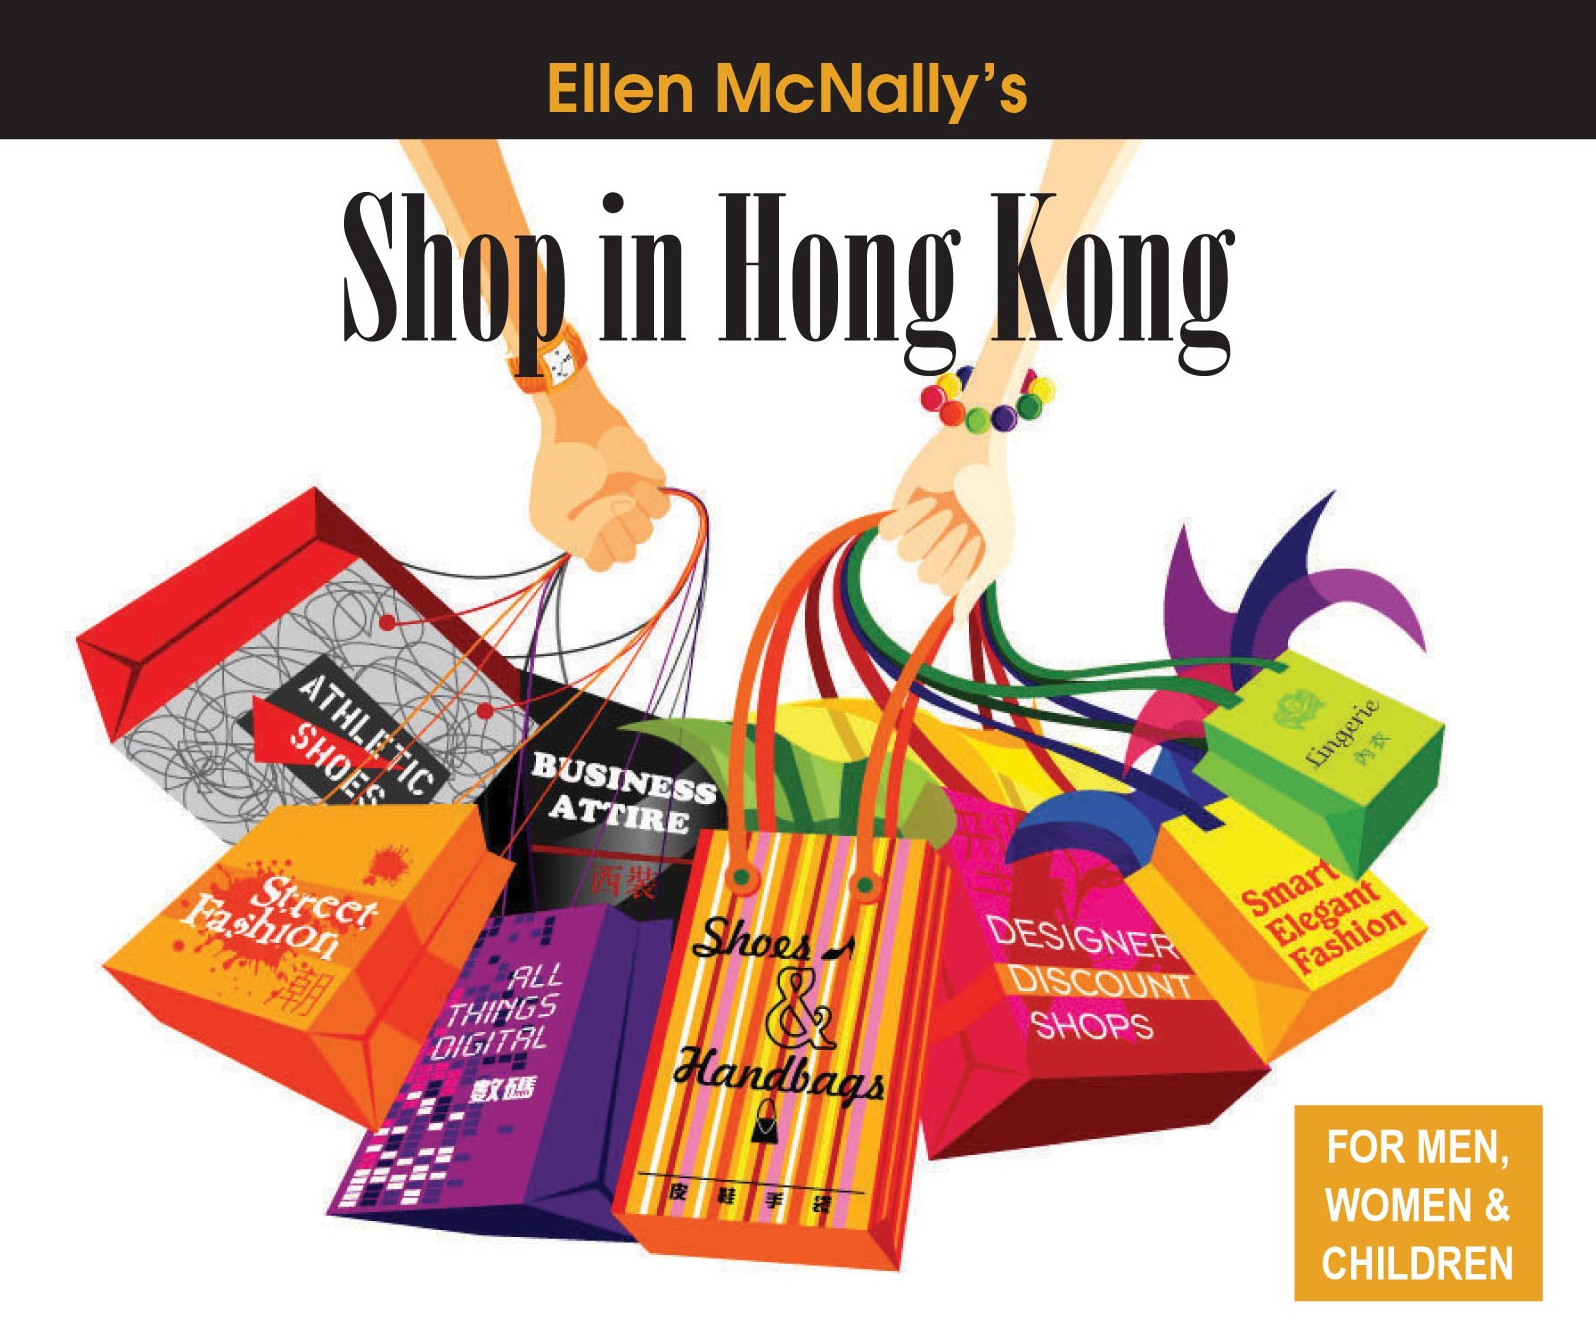 Ellen&#39;s Shopping News: HONG KONG&#39;S LUXURY DESIGNER DISCOUNT OUTLETS